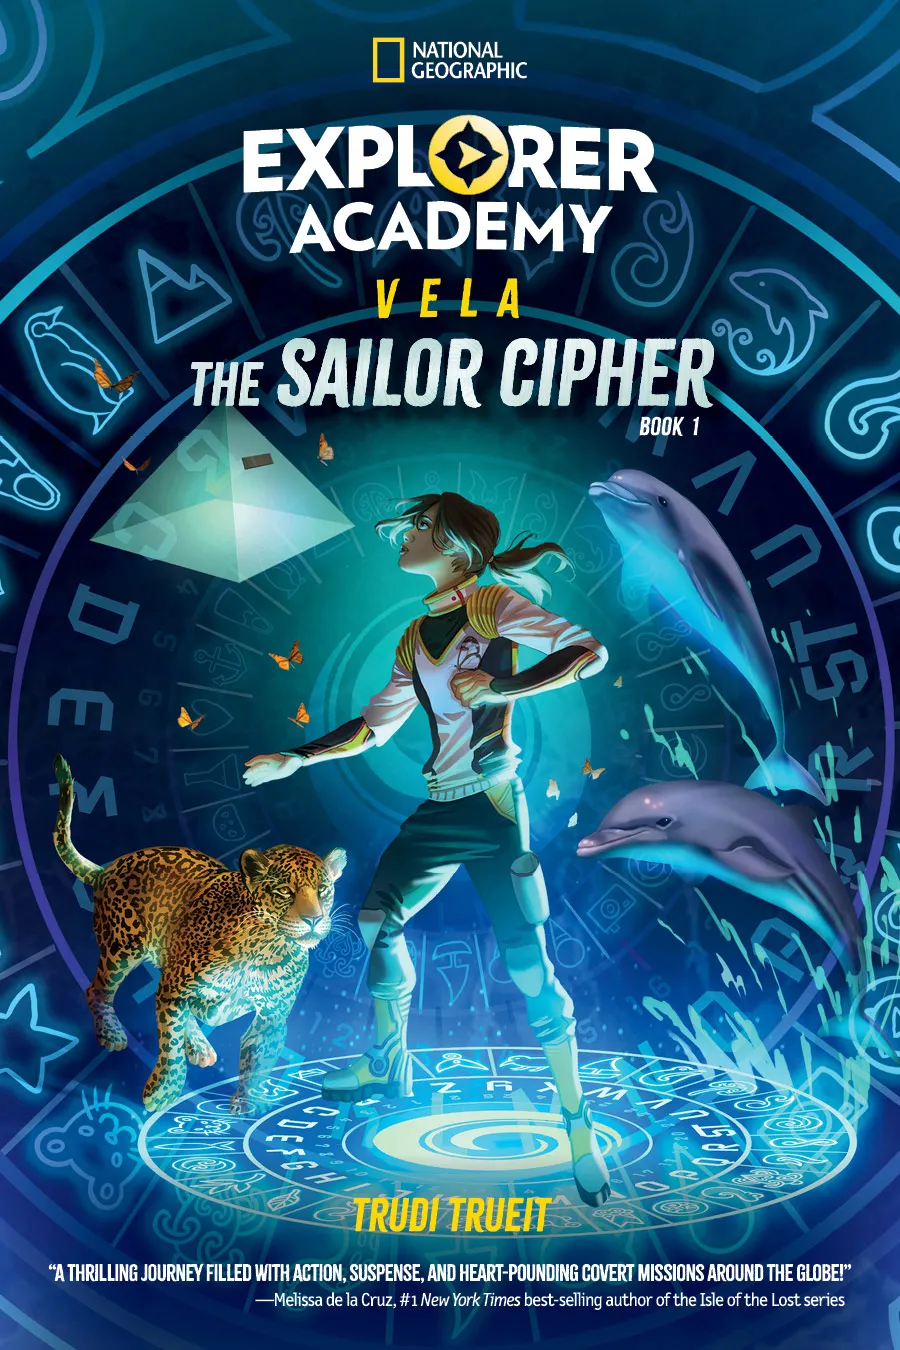 The Sailor Cipher (Explorer Academy Vela #1)